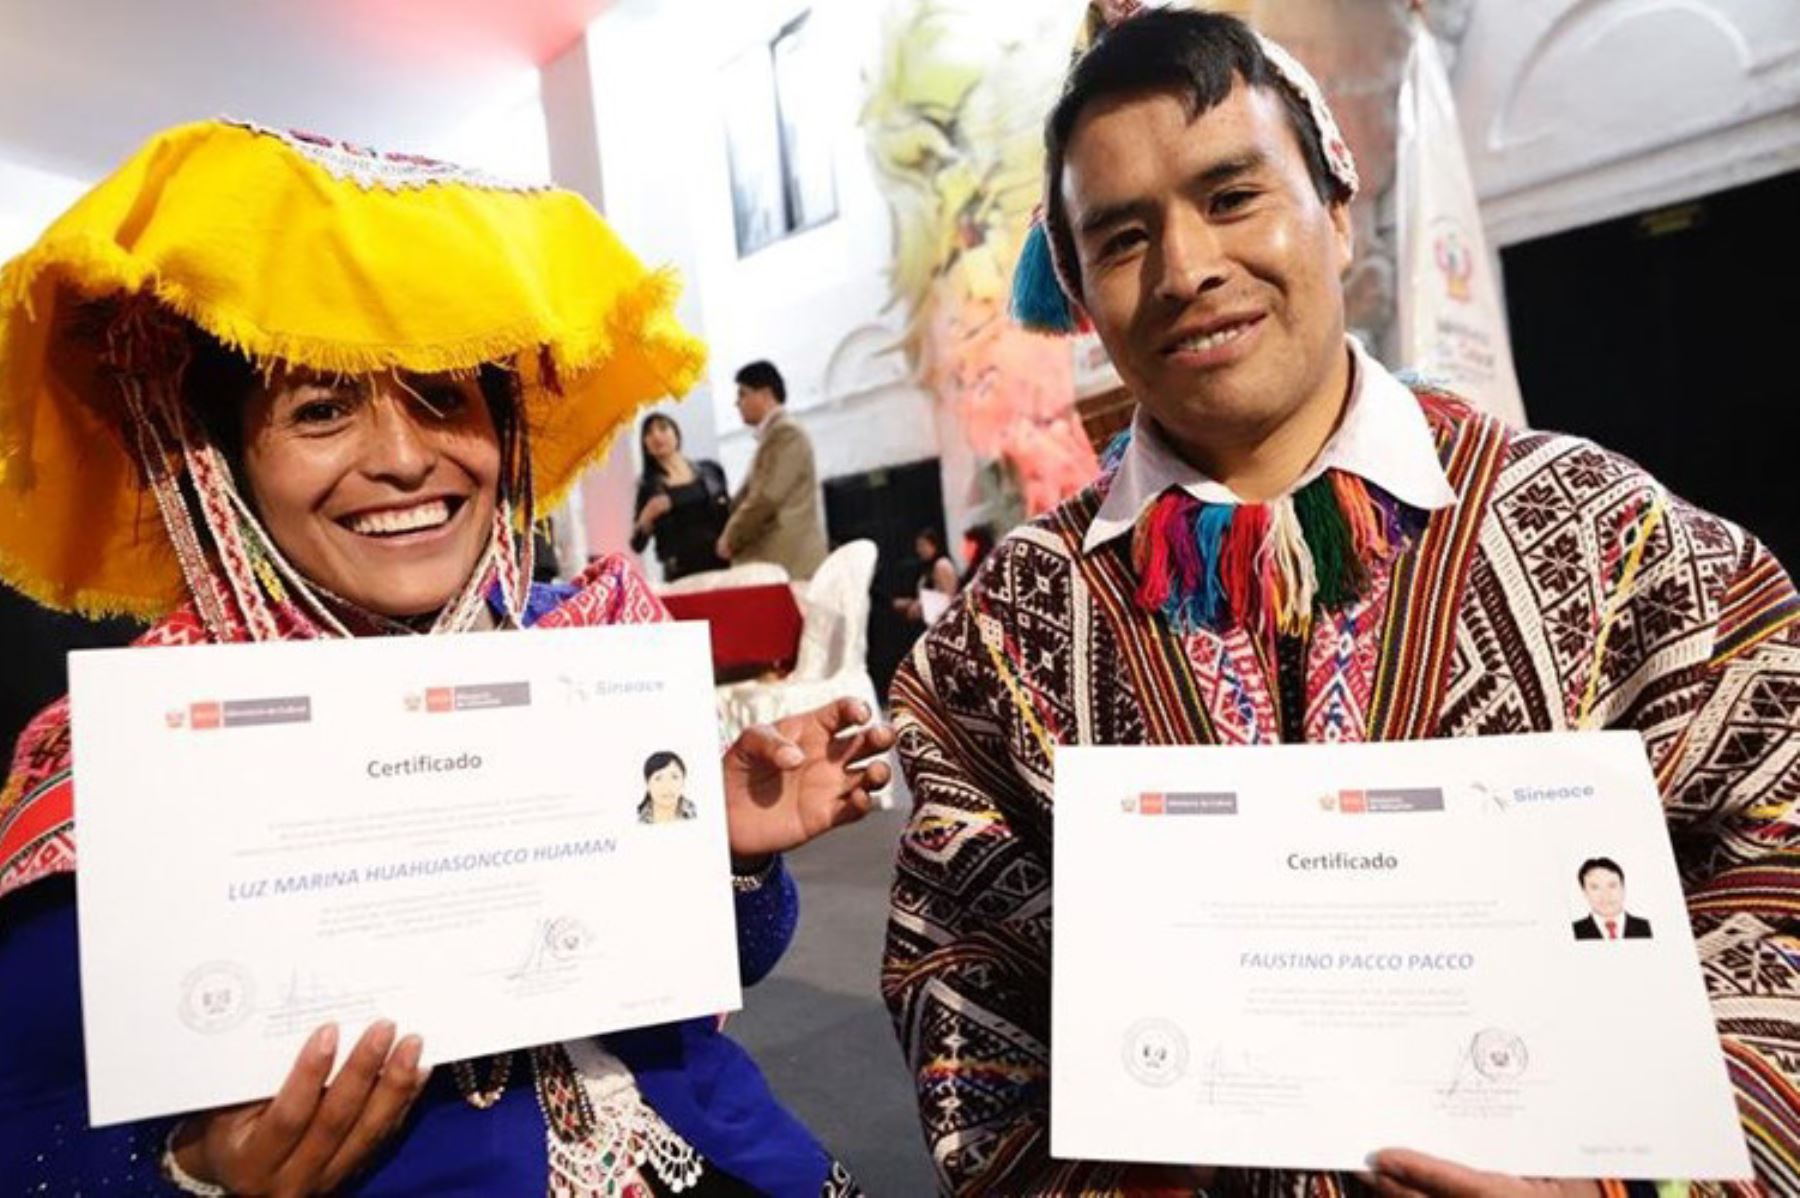 Más de 4 millones de peruanos hablan al menos una de las 48 lenguas originarias que existen en el país. Por eso, es necesario contar con servidores públicos que las hablen y faciliten la comunicación entre la población nativa y las instituciones del Estado que brindan servicios básicos como salud, educación, entre otros. ANDINA/DifusiónANDINA/Difusión